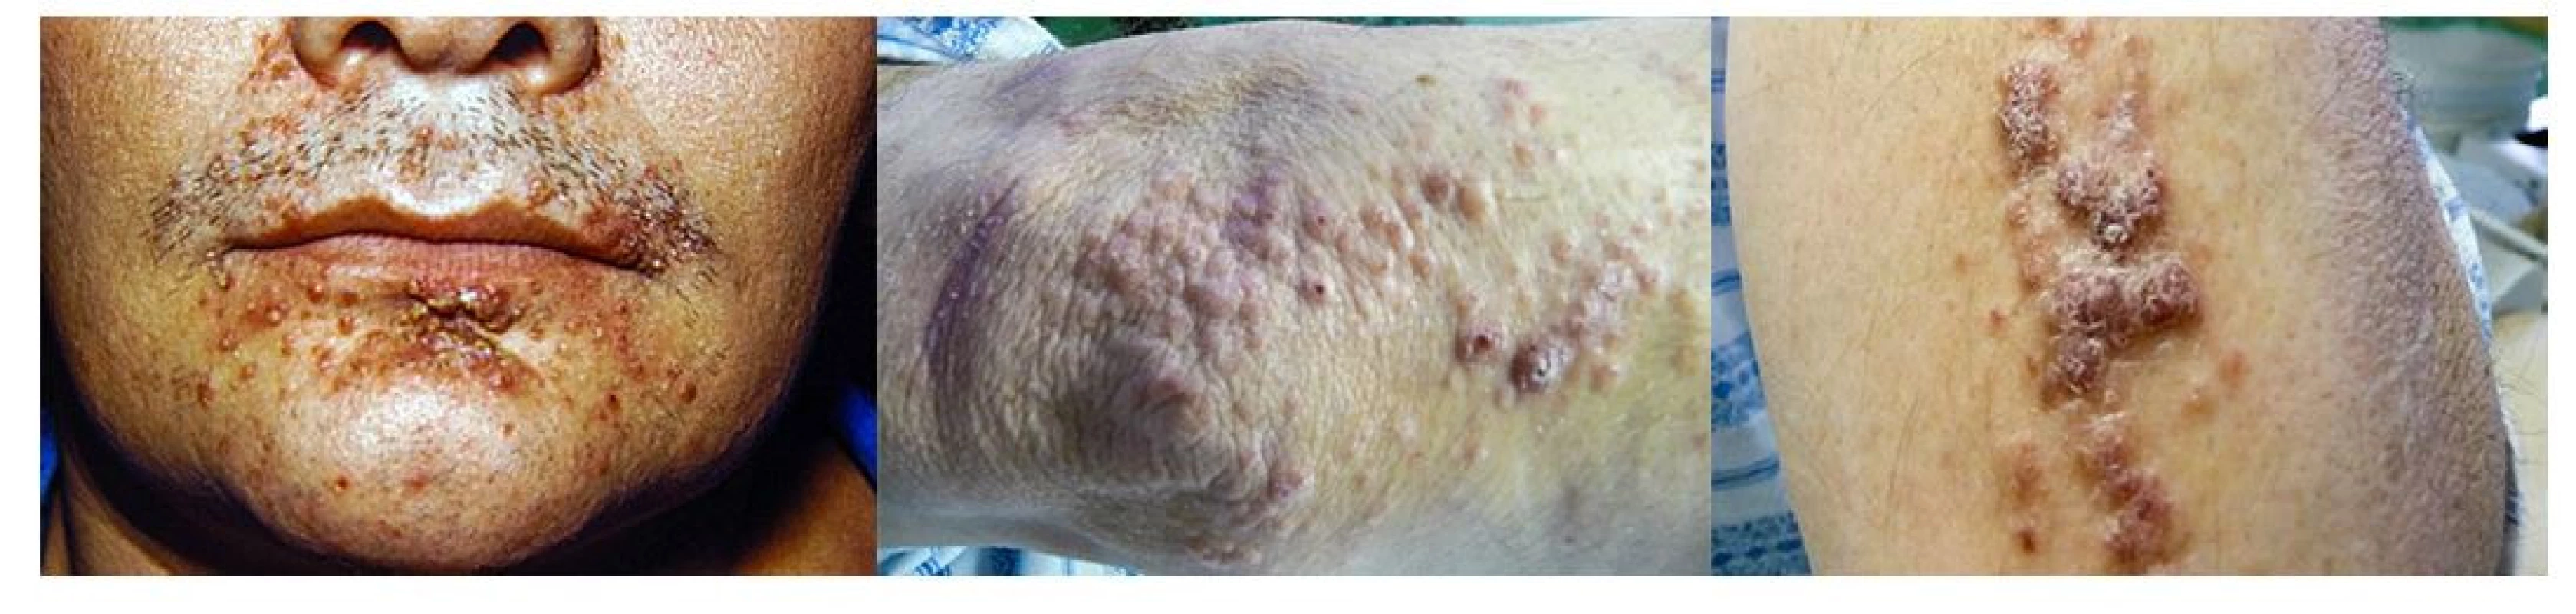 LCH infiltruje často intertriginózní oblasti, ale může se objevit i na obličeji a na paži. Makroskopicky může připomínat folikulitidu a jedině histologické
vyšetření excize kůže může správně stanovit diagnózu. Proto u špatně se hojících či nehojících se kožních morf je na místě vždy histologická verifikace
kožního onemocnění